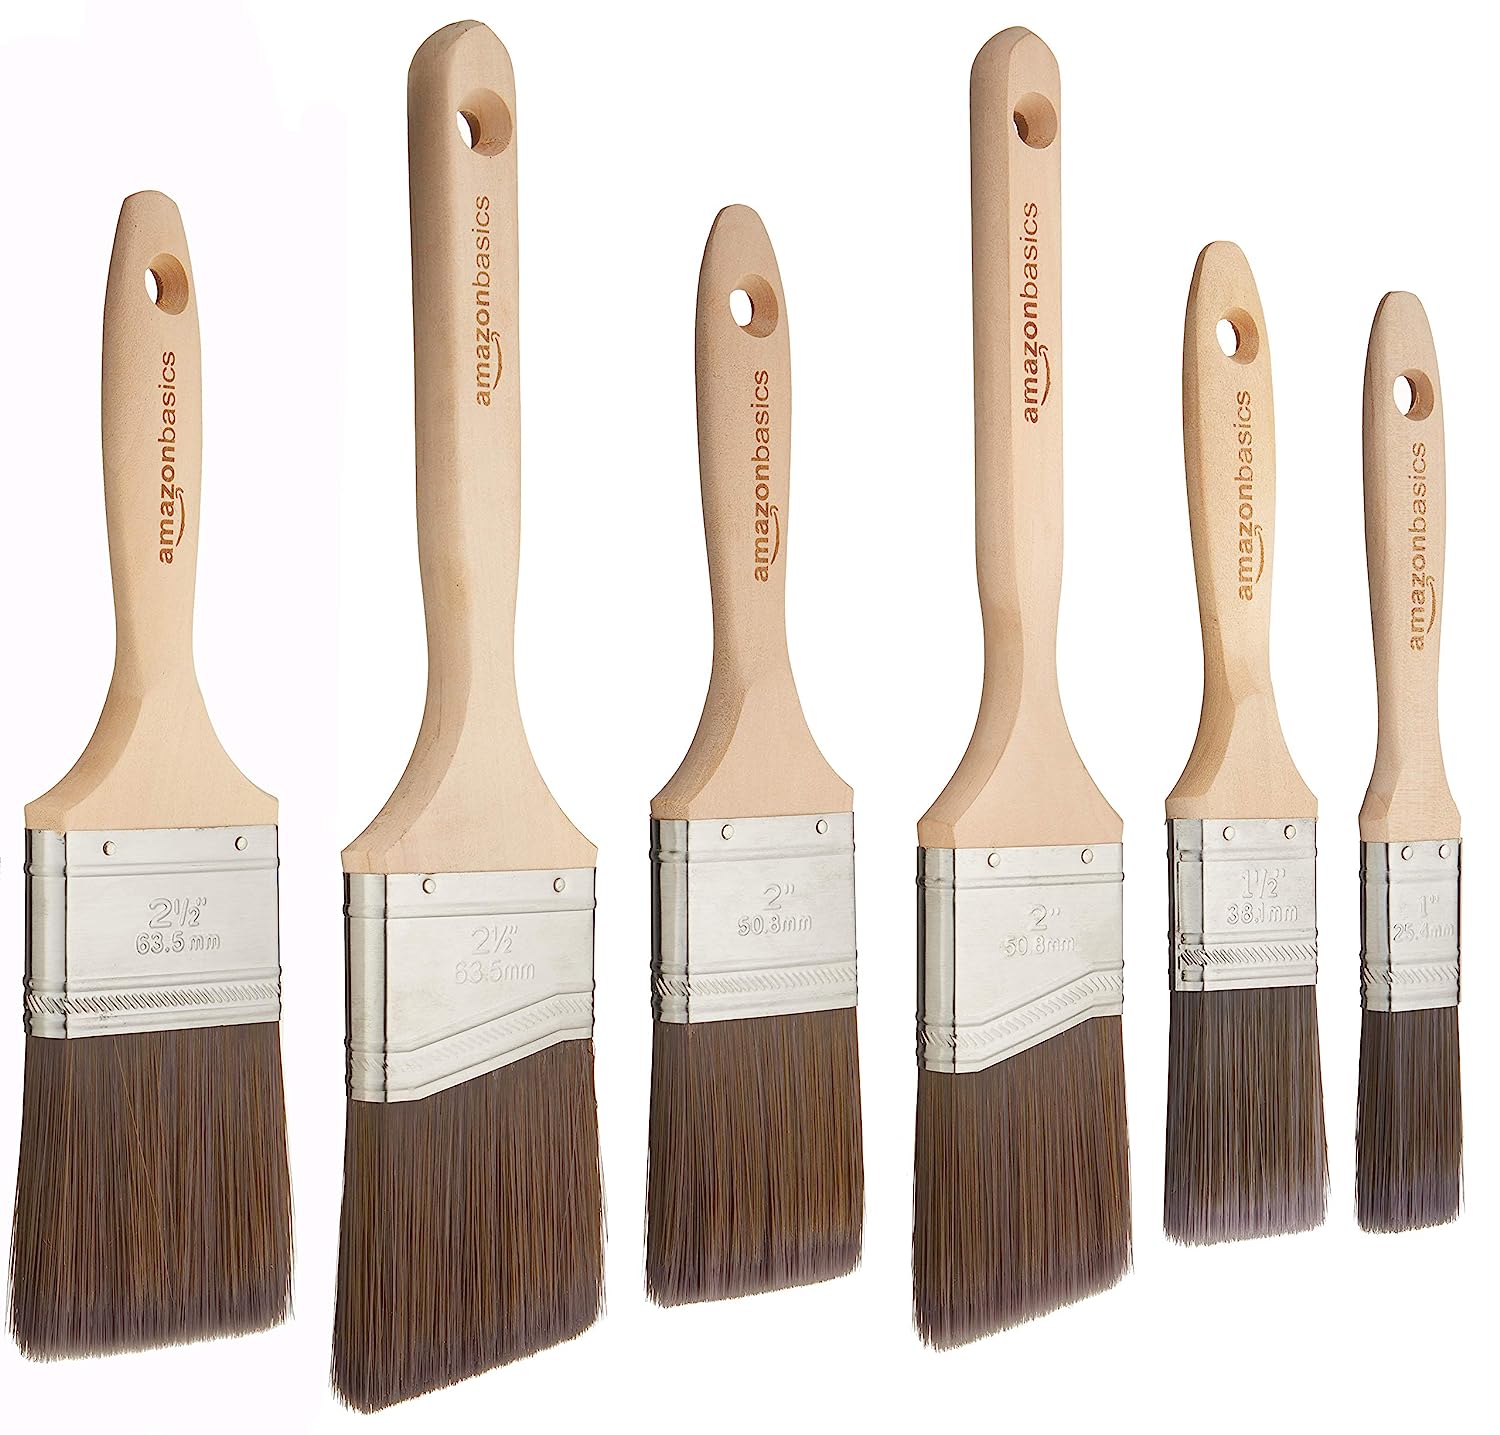 Amazon Basics Master Pro Paint Brush Set - 6 brushes